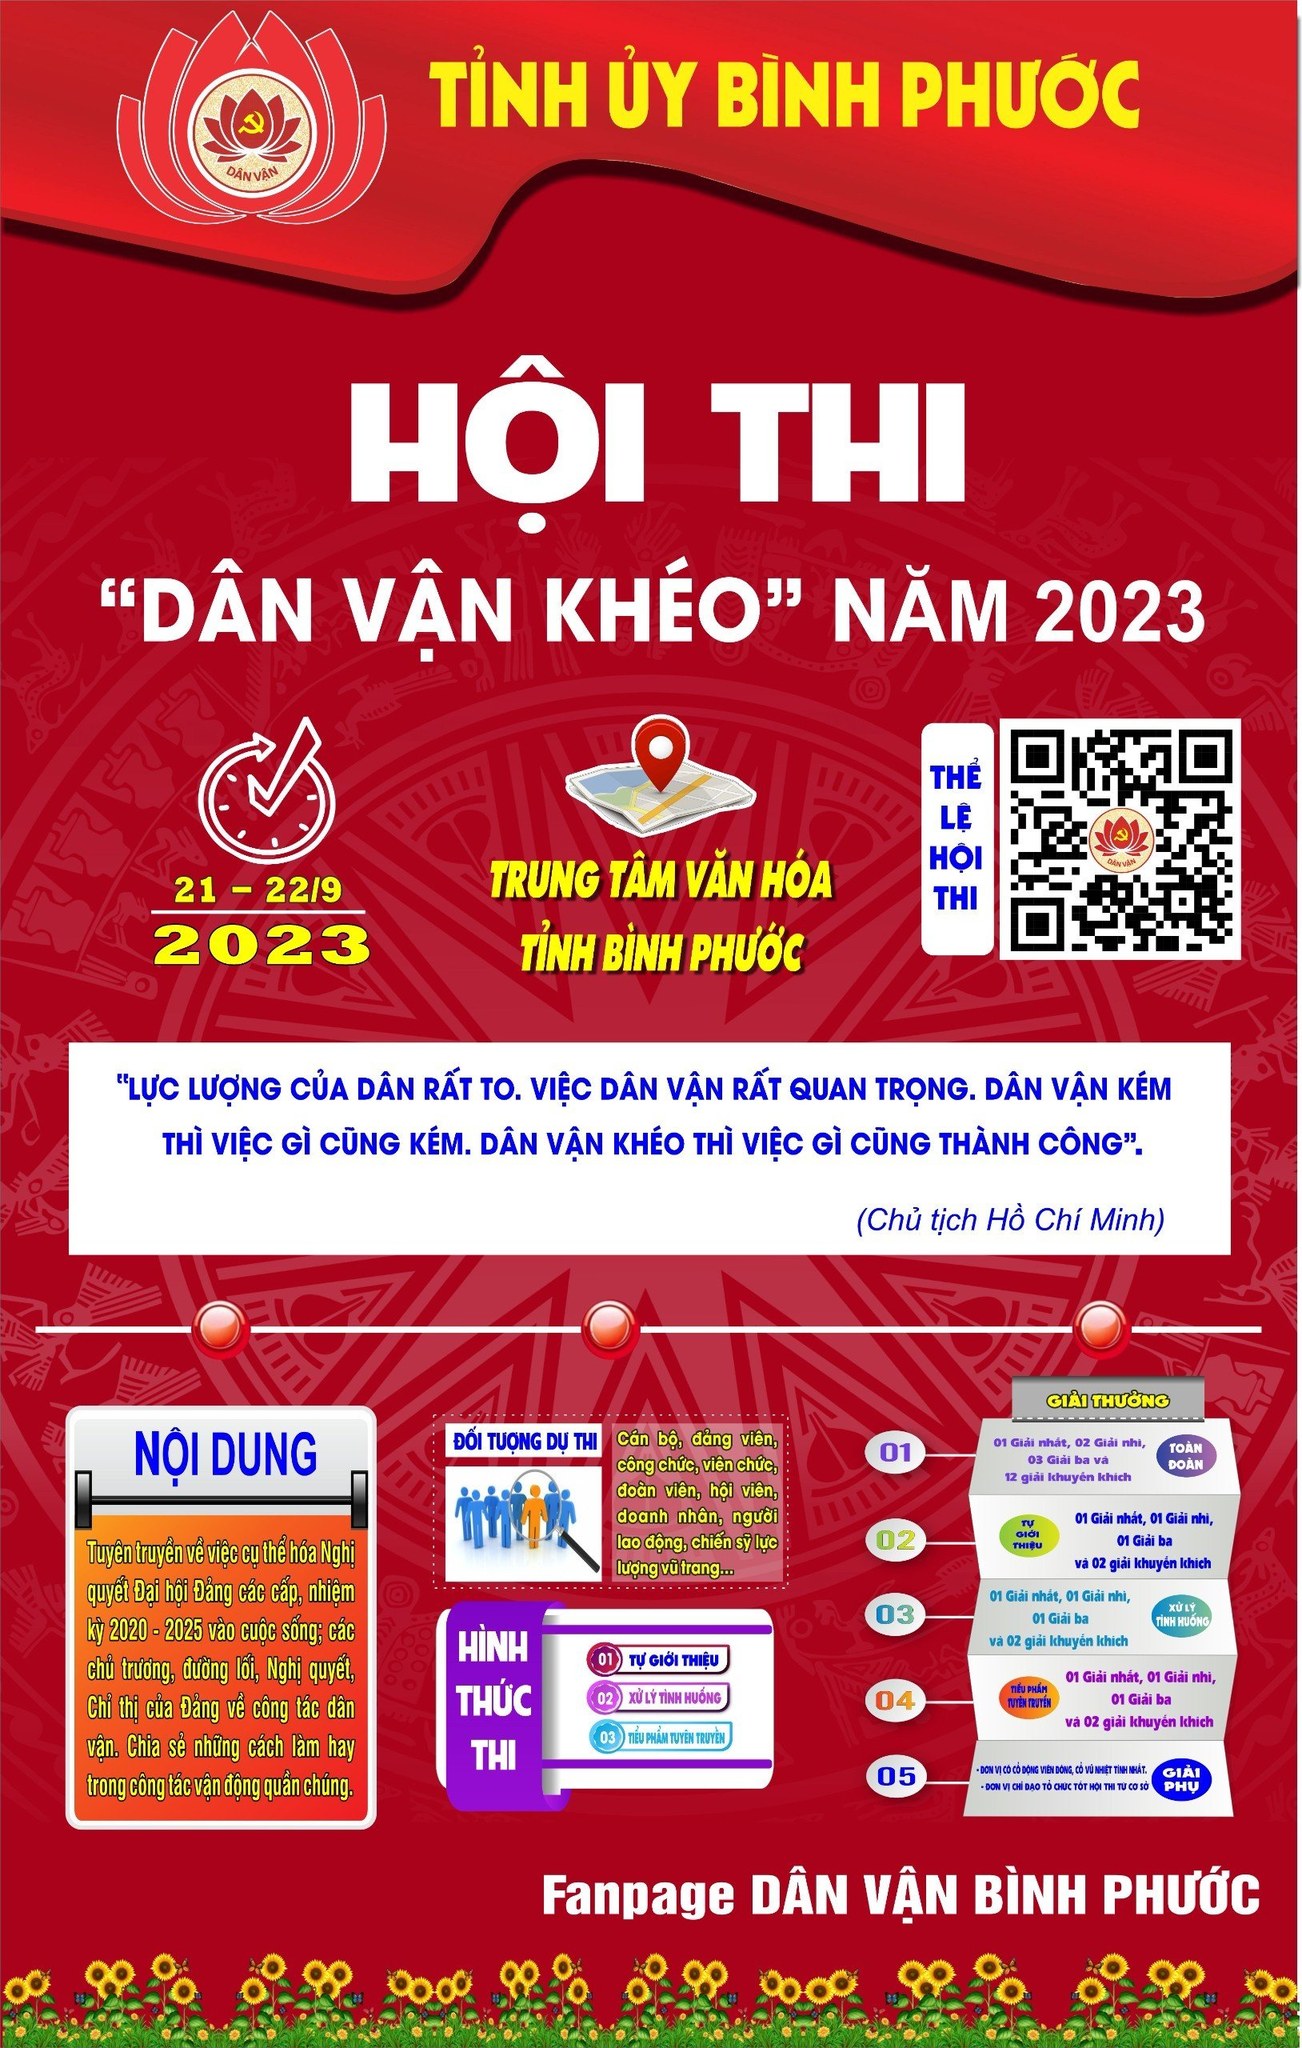 Thông tin Hội thi Dân vận khéo tỉnh Bình Phước, năm 2023